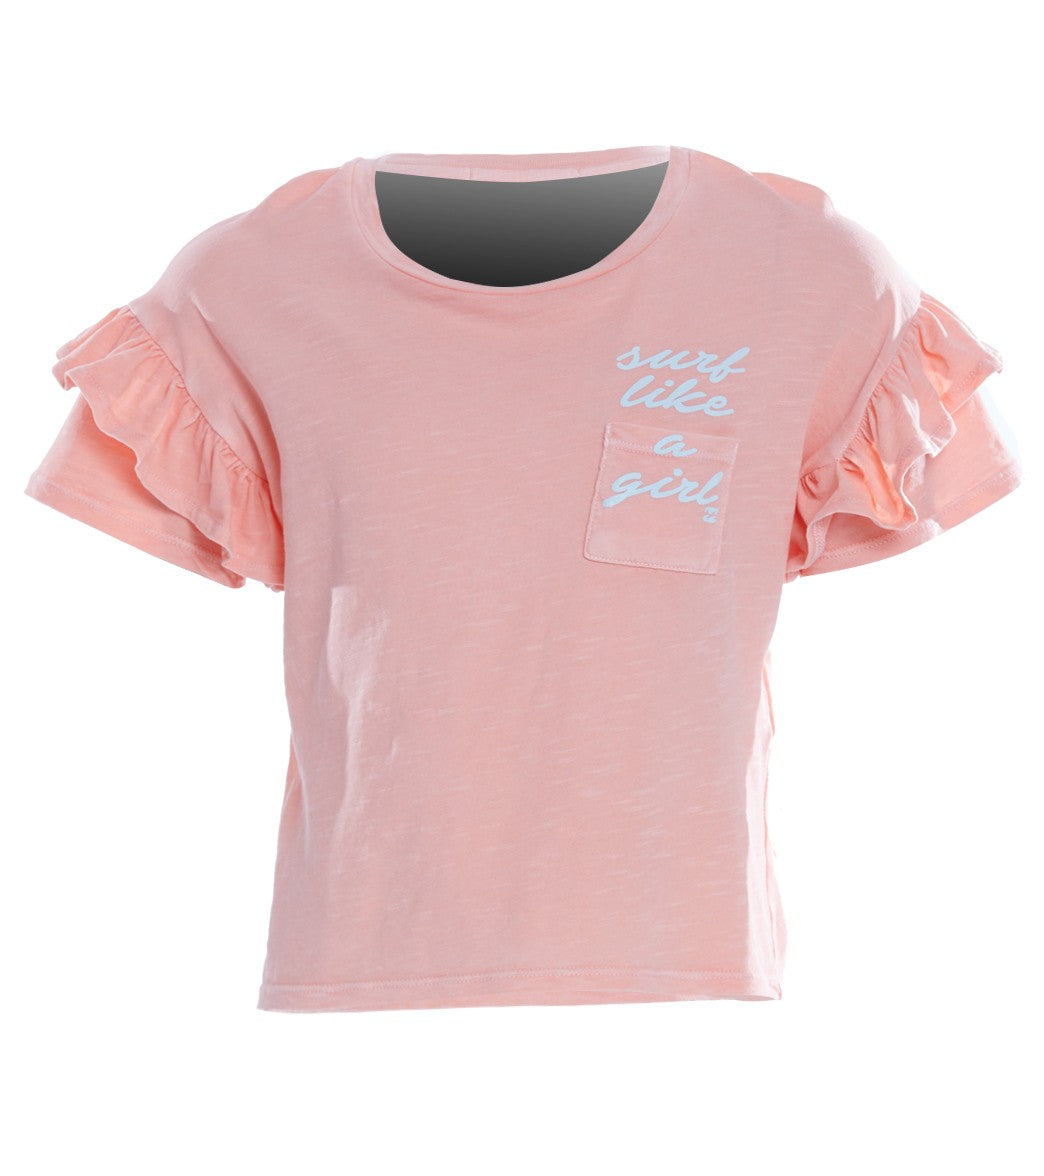 Billabong Girls' Tee Shirt Time Ruffle Sleeve - Sorbet Medium 10/12 Size Medium Cotton - Swimoutlet.com